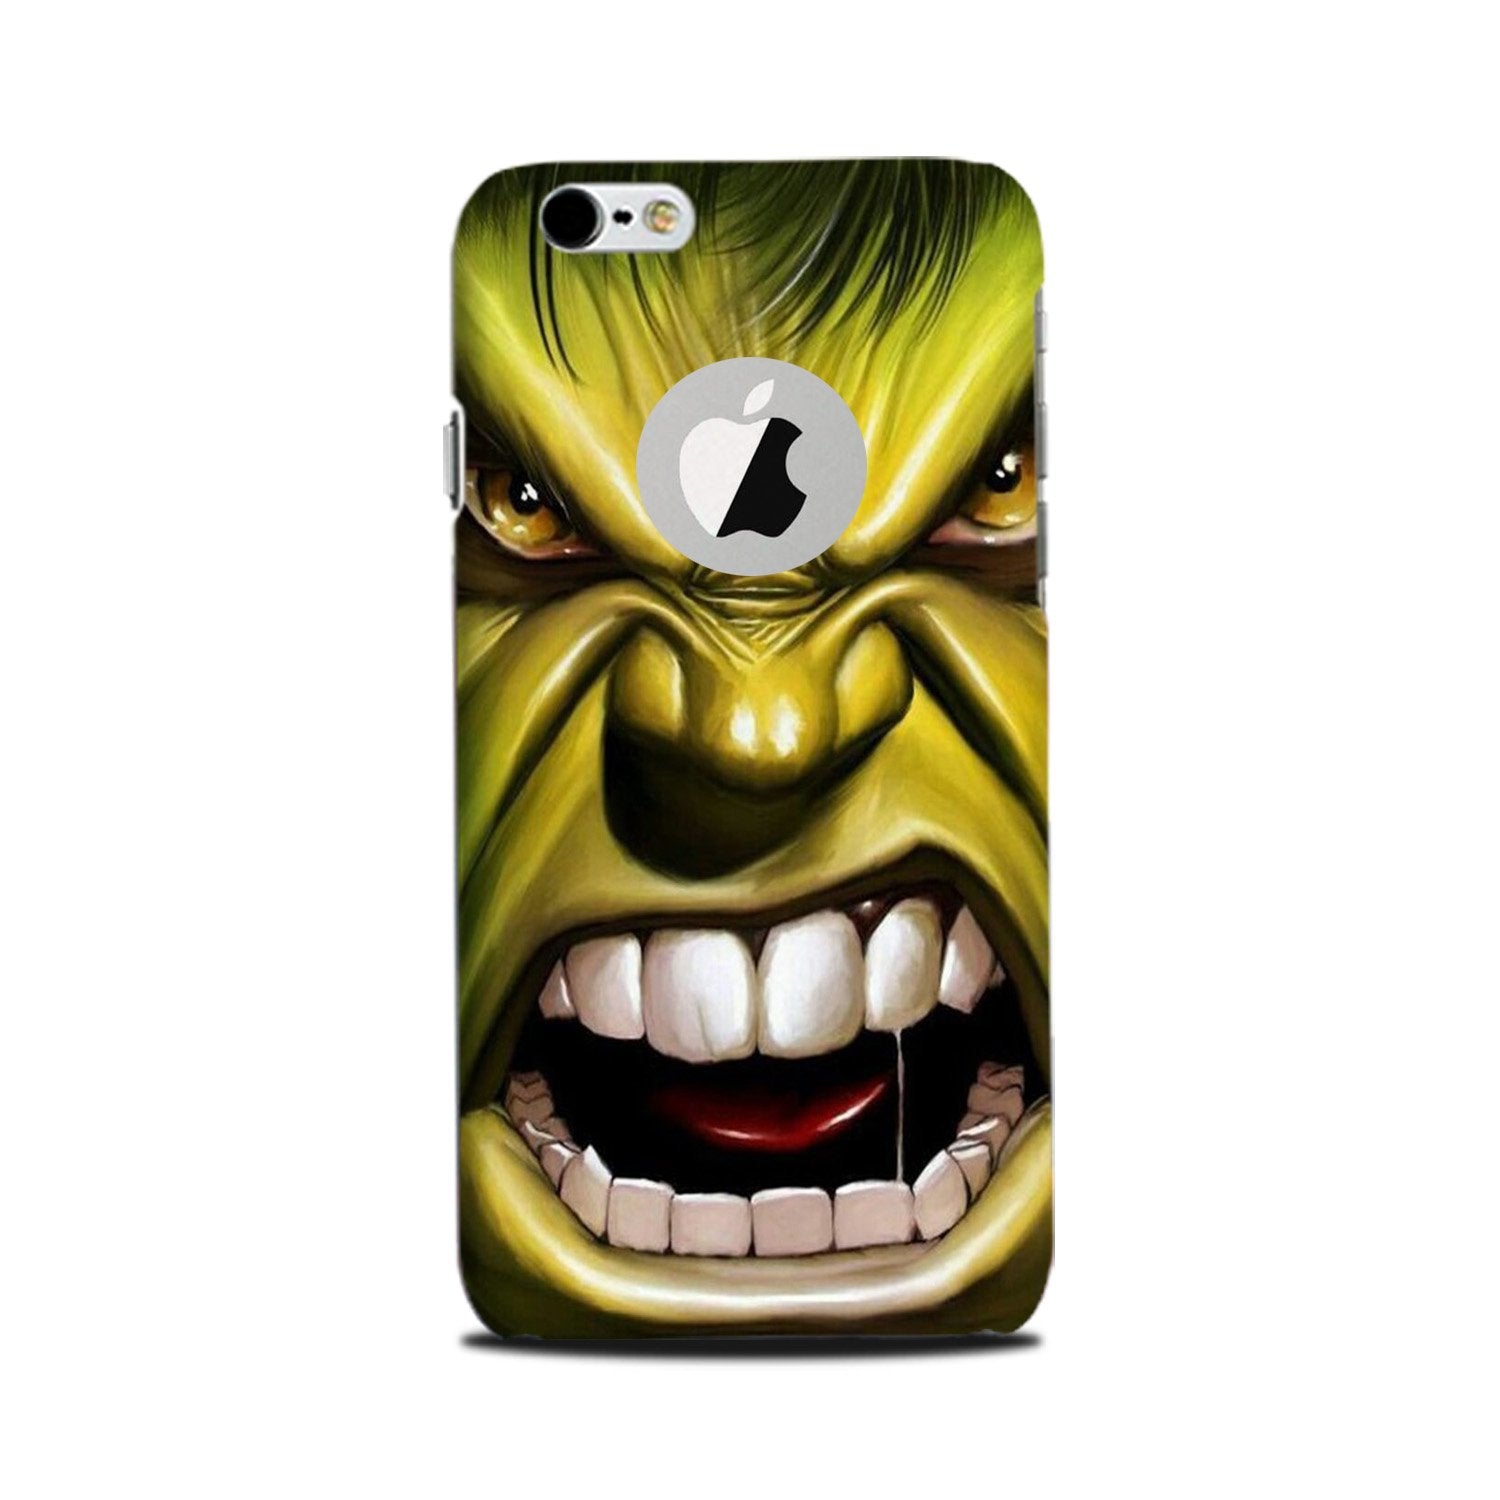 Hulk Superhero Case for iPhone 6 Plus / 6s Plus logo cut (Design - 121)